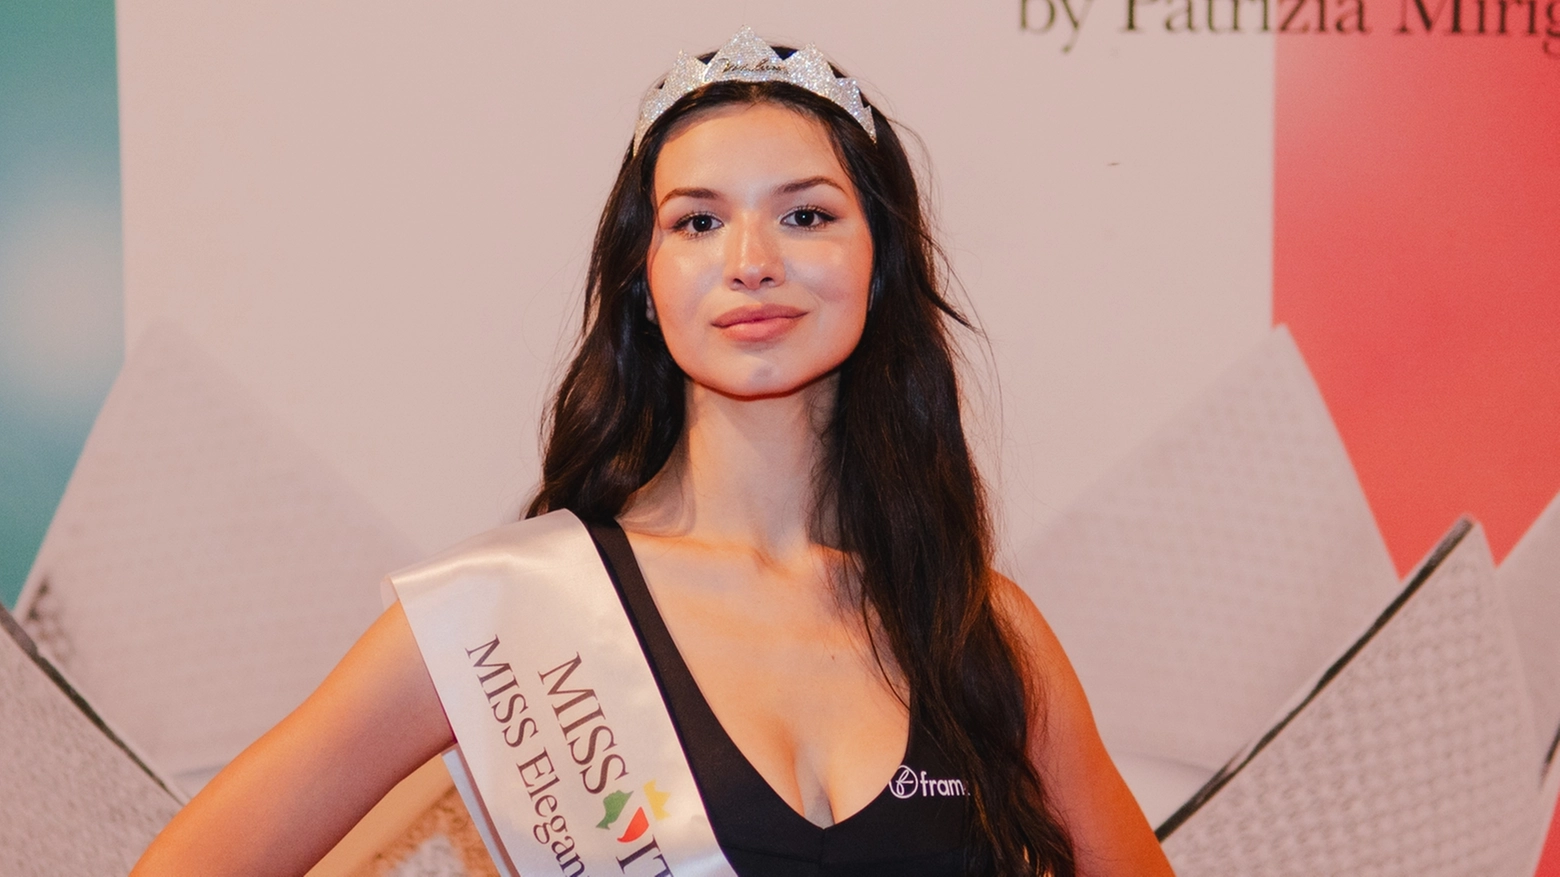 L’aspirante attrice vince Miss Eleganza Lombardia. Nella selezione di base s’impone Lara Tranchini